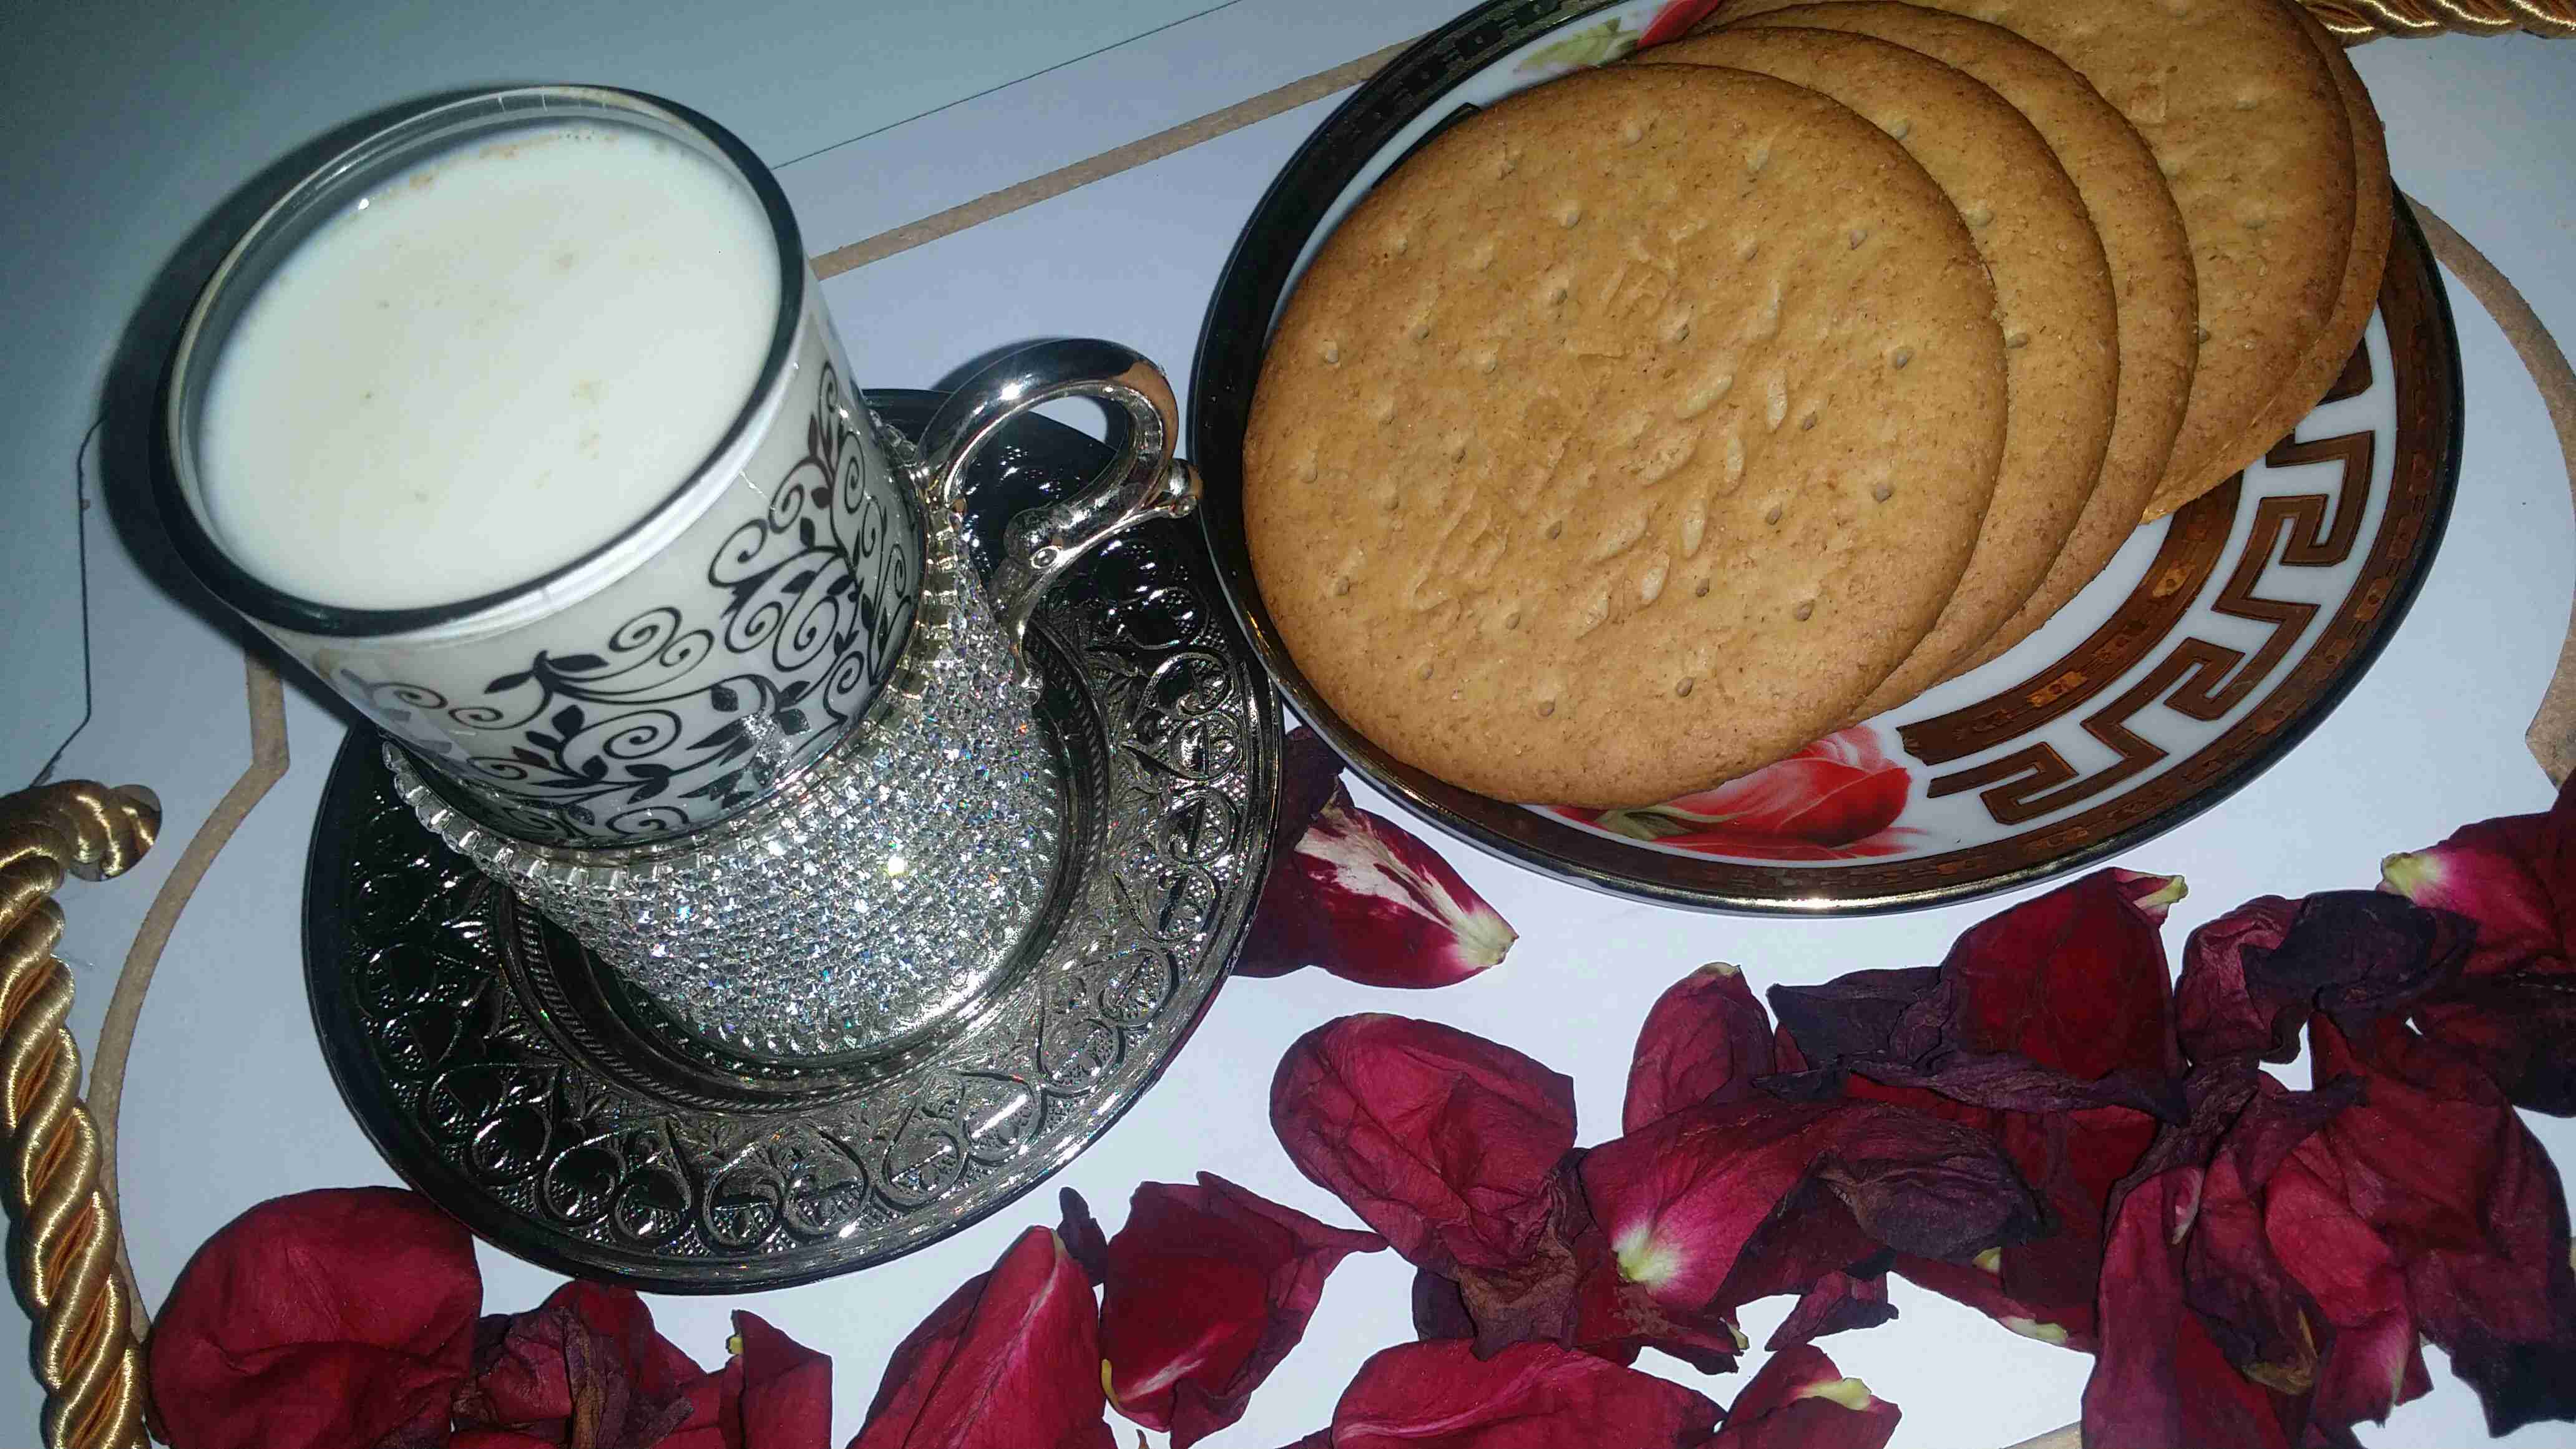 رغيف البدو و مشروب الحليب بالزنجبيل مع الفول الحجازي ملكة الشتاء